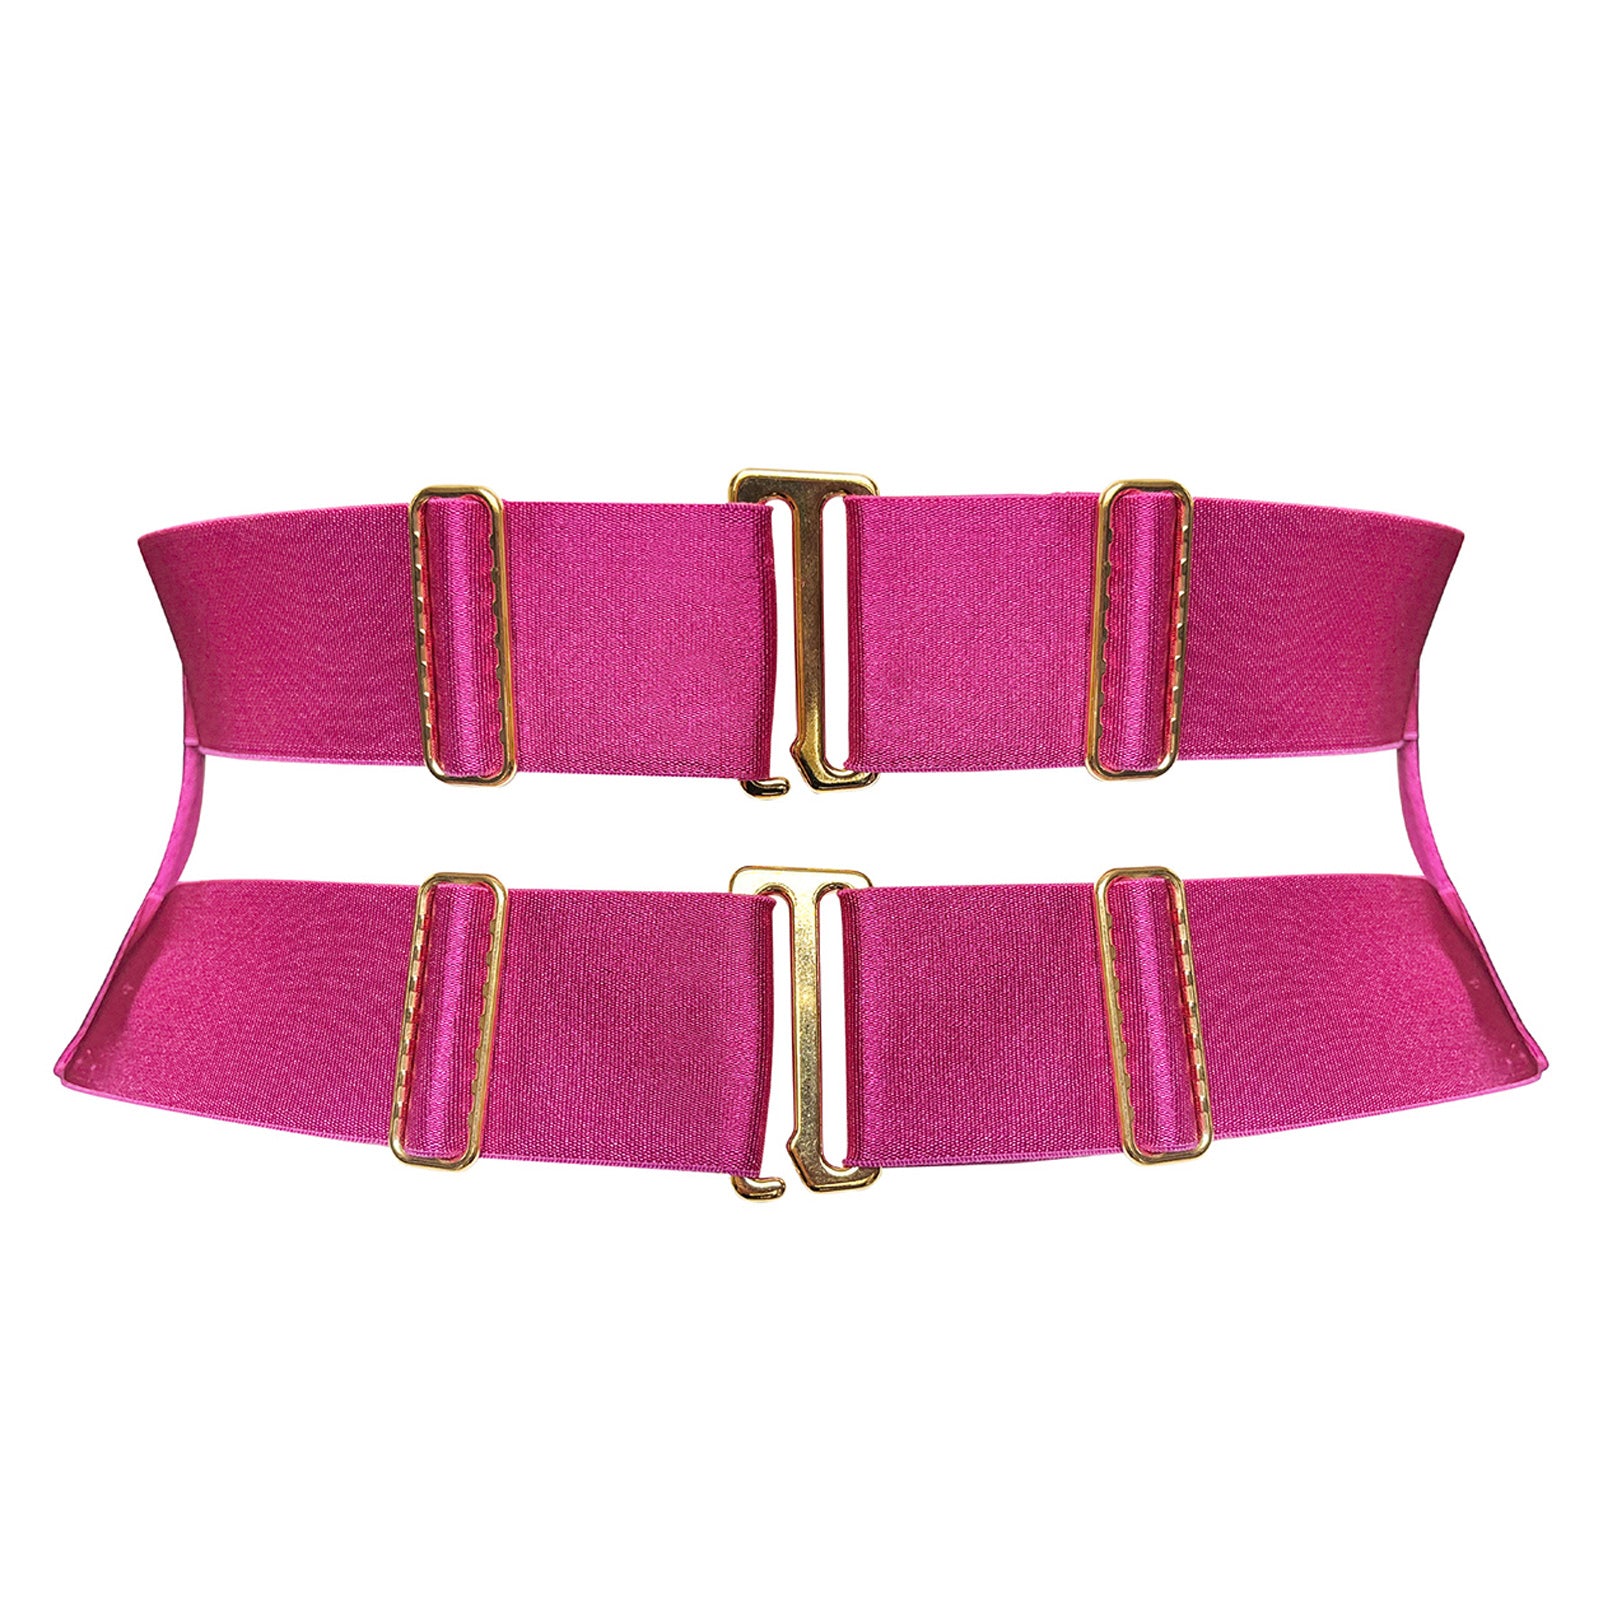 Bordelle Vero adjustable belt in Magenta